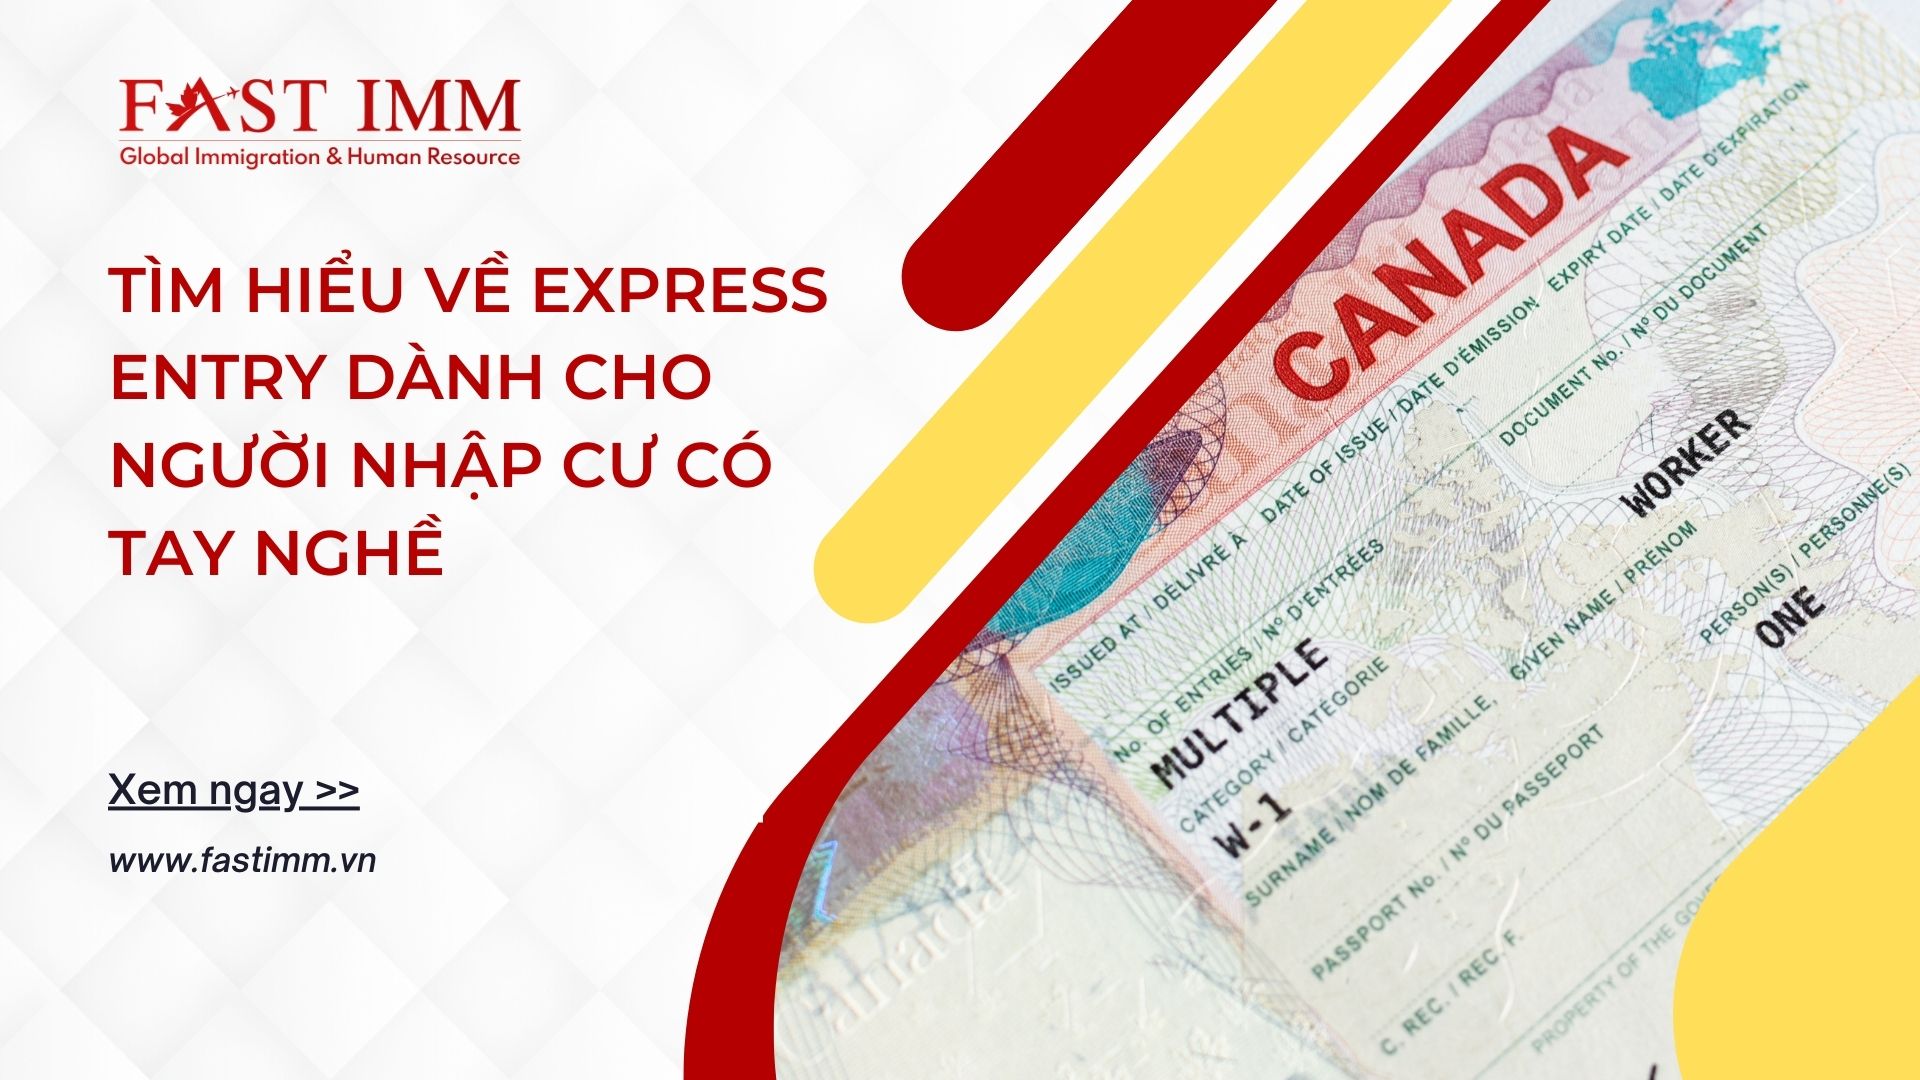 Tìm hiểu về Express Entry dành cho người nhập cư có tay nghề